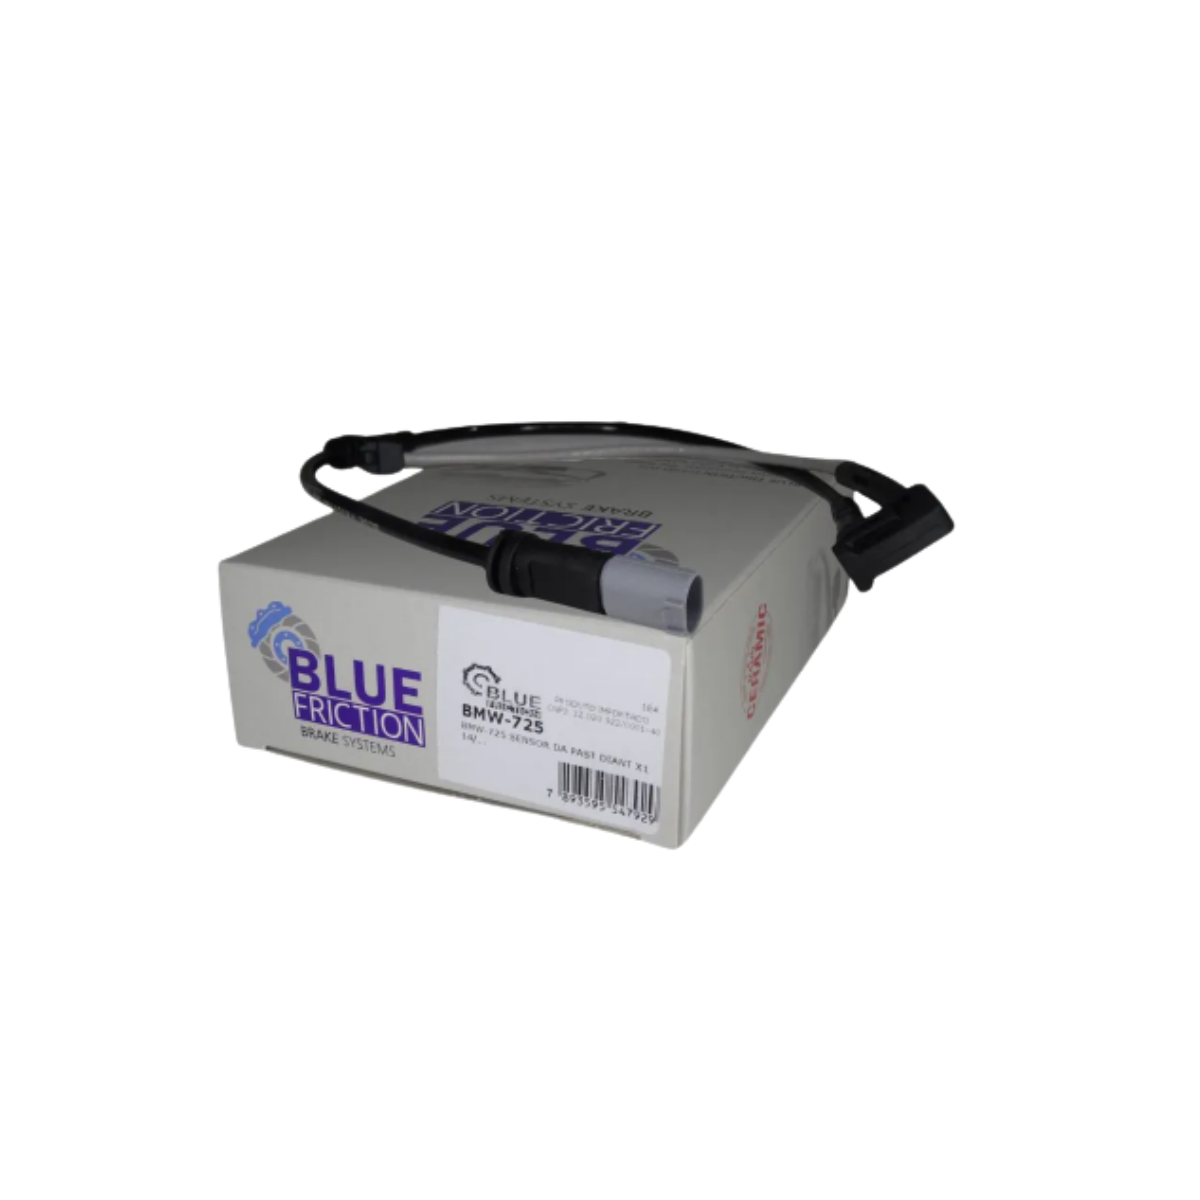 Sensor Desgaste Pastilha Mini Cooper A Partir De 2013 Dianteira Lado Esquerdo Blue Friction Bmw-725m New